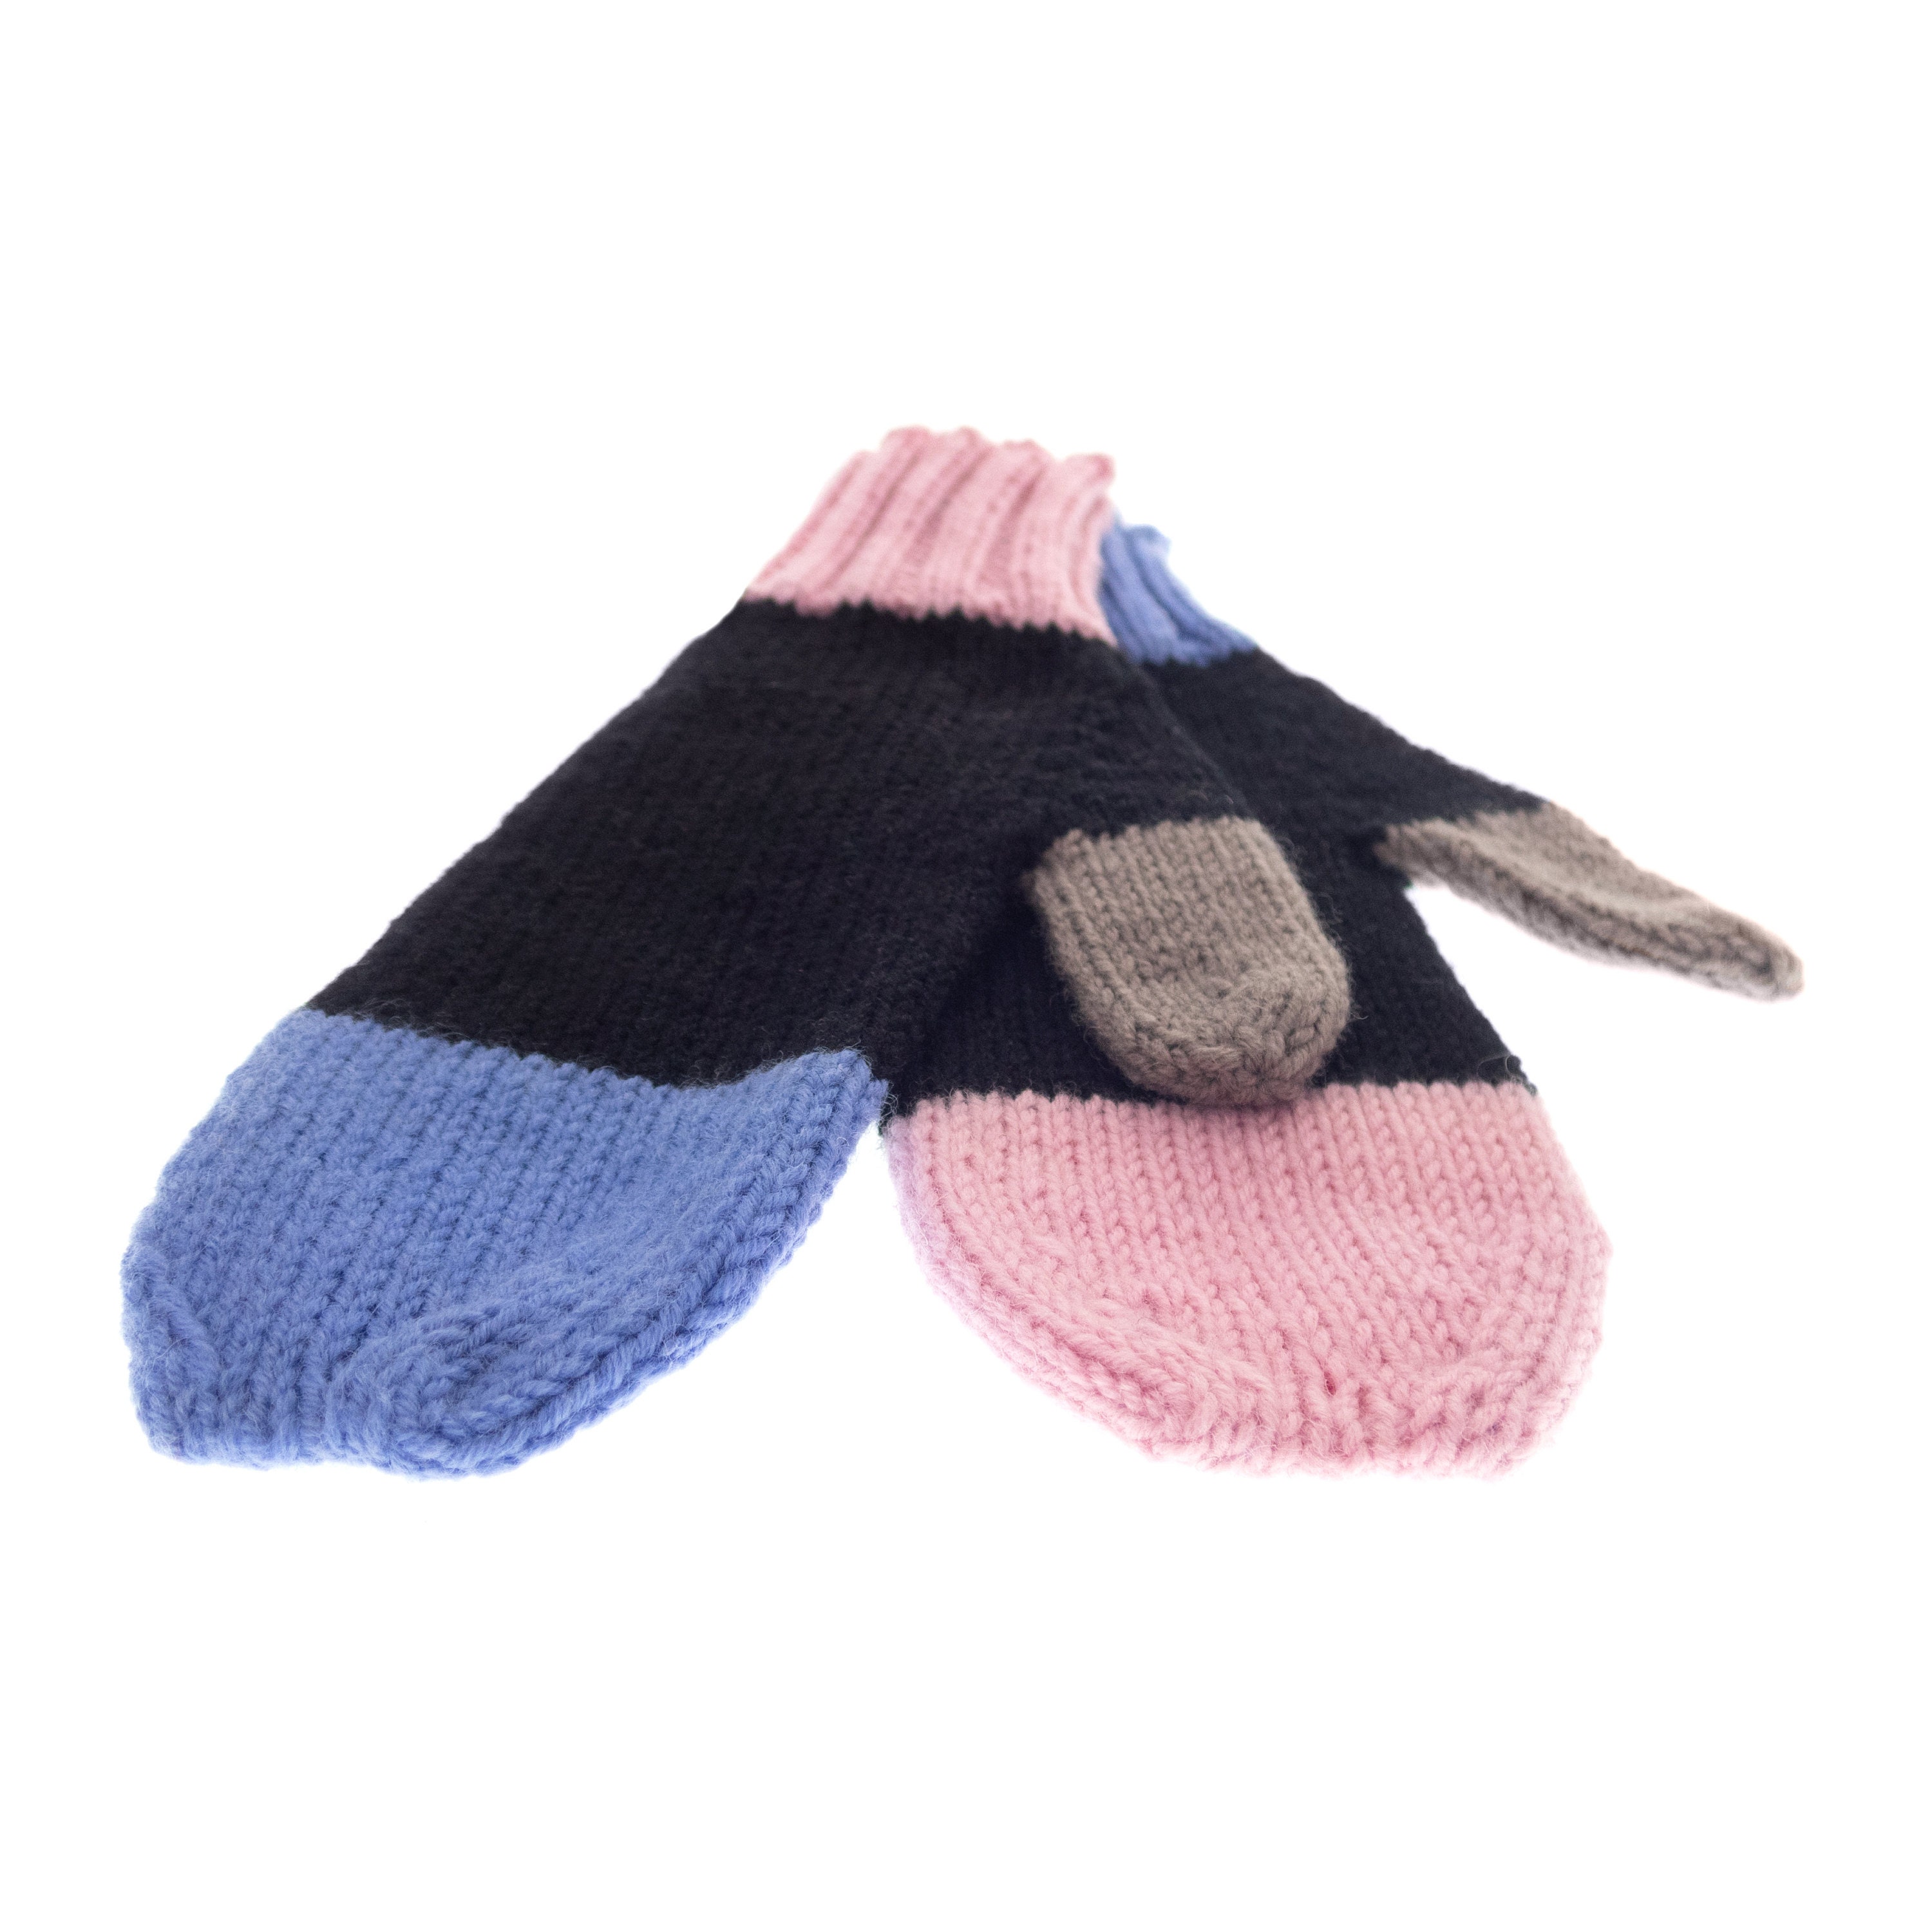 Wool Mittens for Women, Handmade asymmetrical